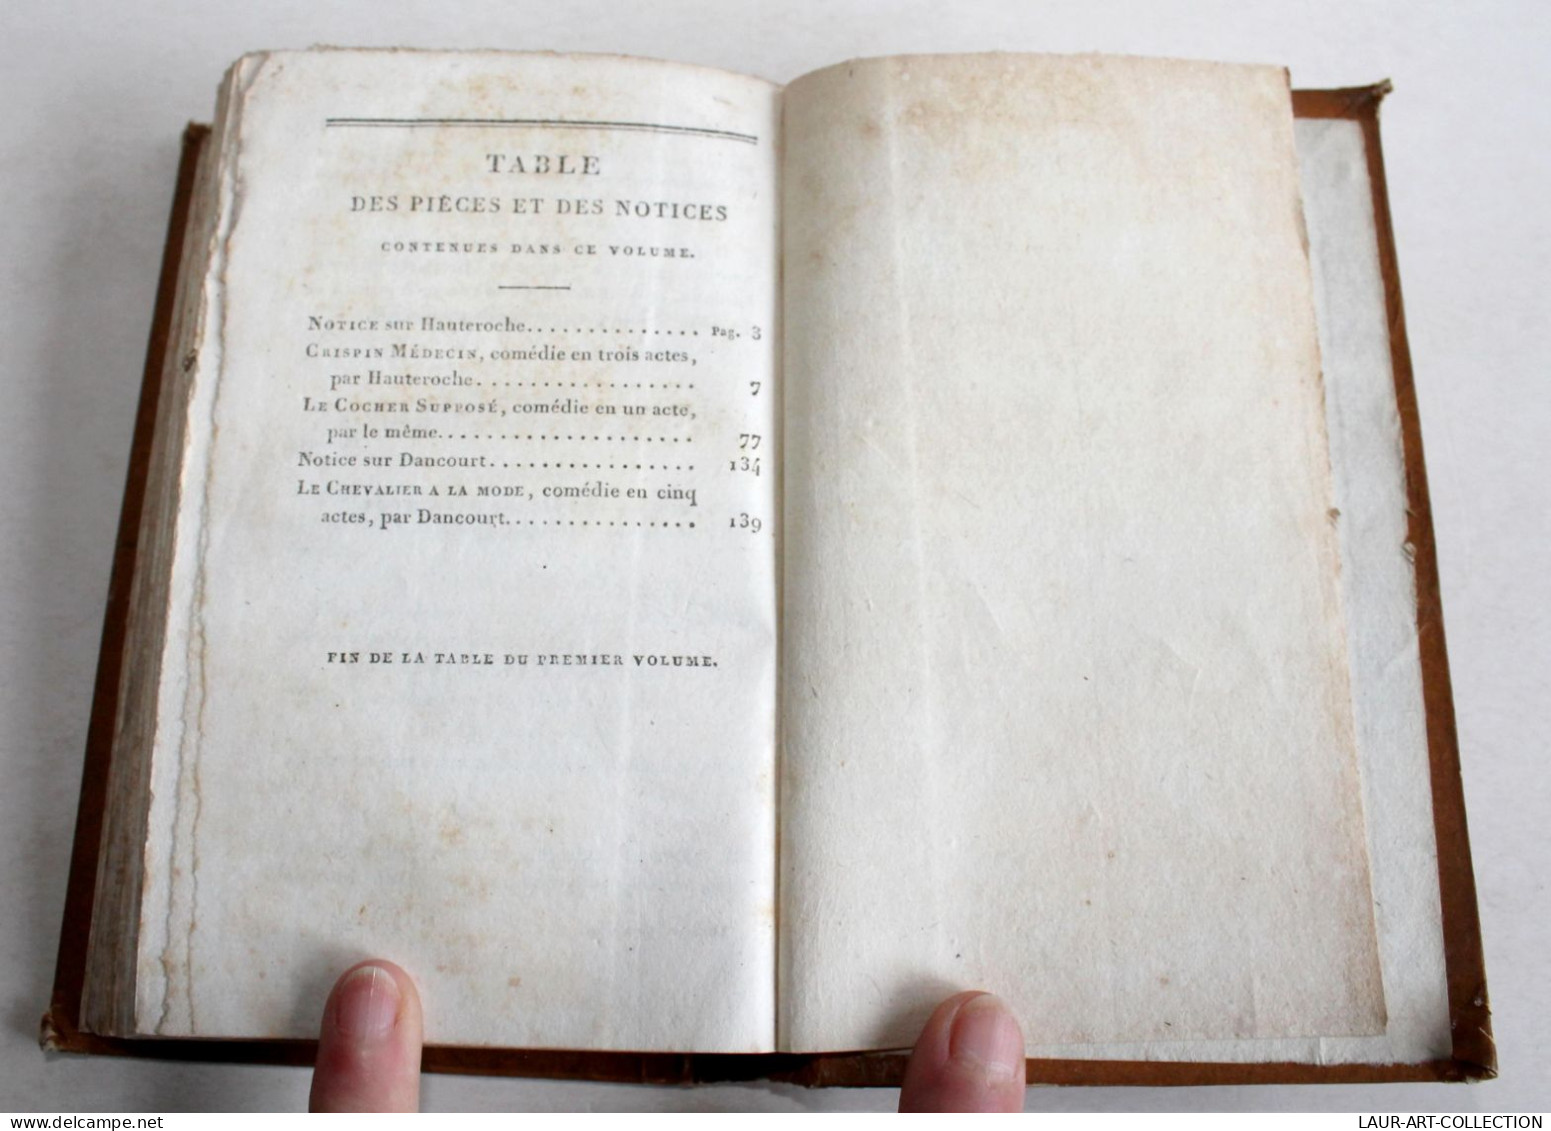 REPERTOIRE GENERAL DU THEATRE FRANCAIS, TRAGEDIES COMEDIES & DRAMES, TOME 1 1821 / ANCIEN LIVRE XIXe SIECLE (1803.245) - Franse Schrijvers